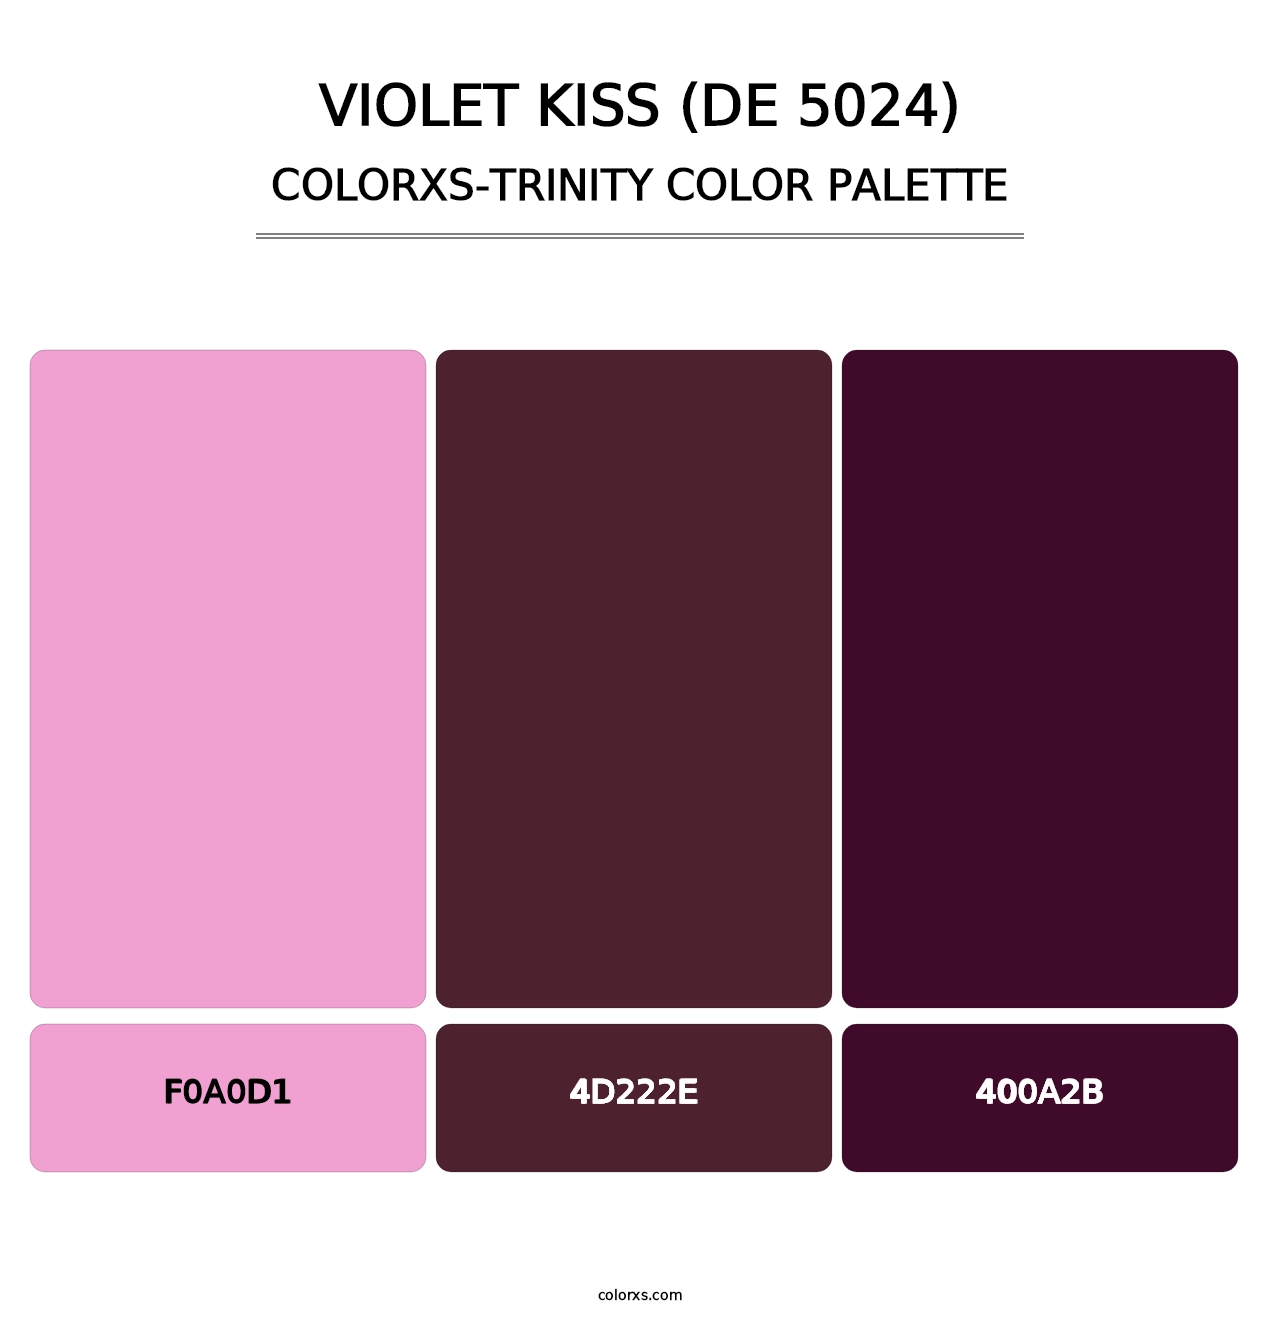 Violet Kiss (DE 5024) - Colorxs Trinity Palette